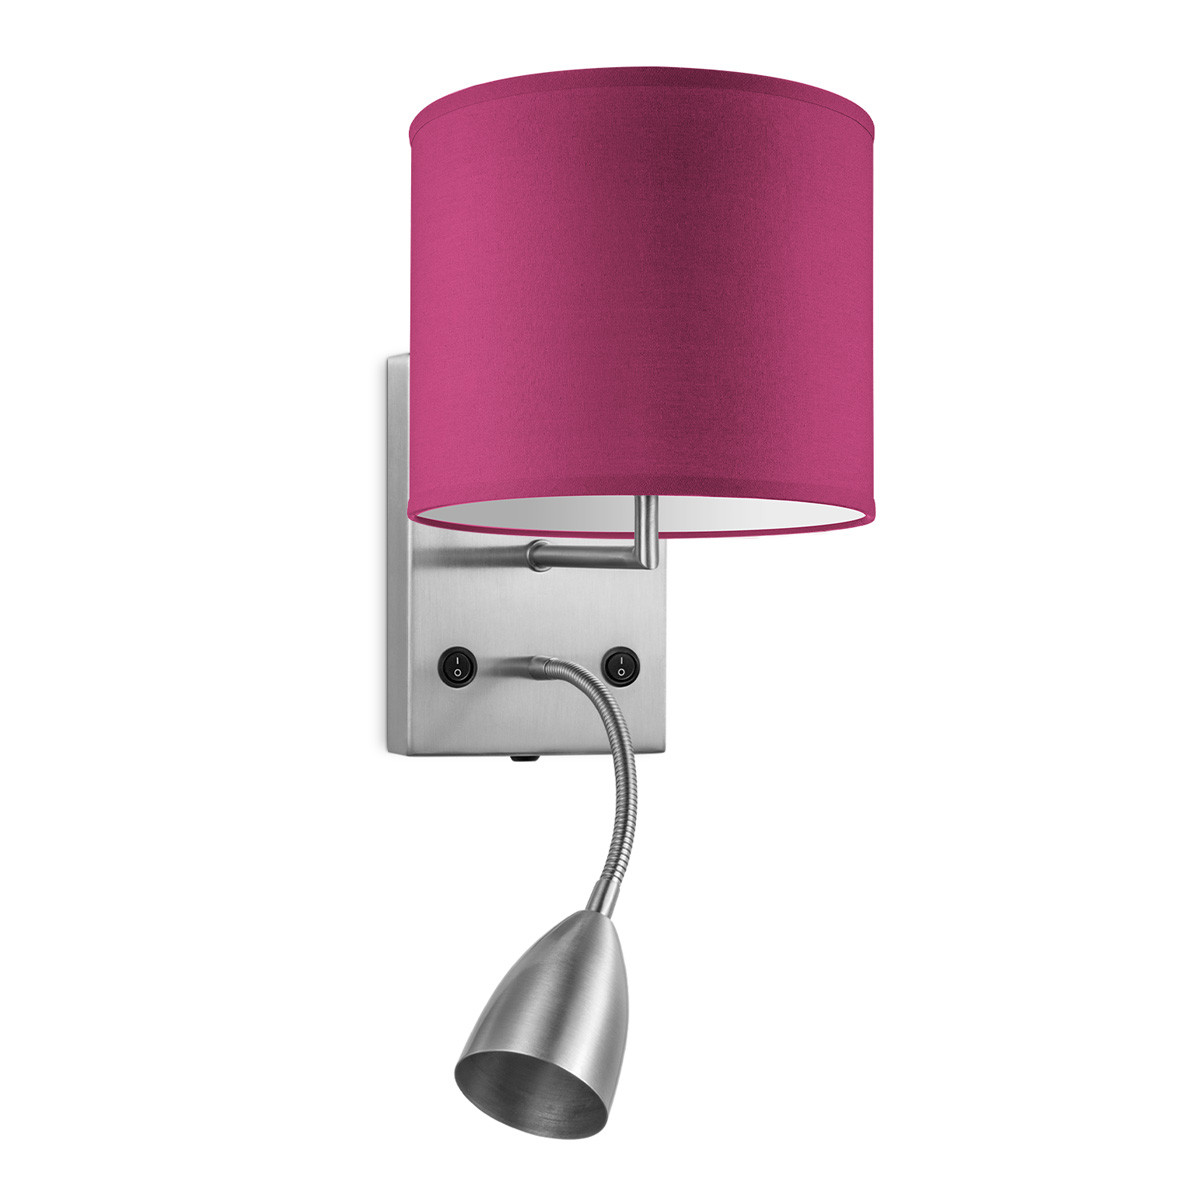 Light depot - wandlamp read bling Ø 20 cm - roze - Outlet